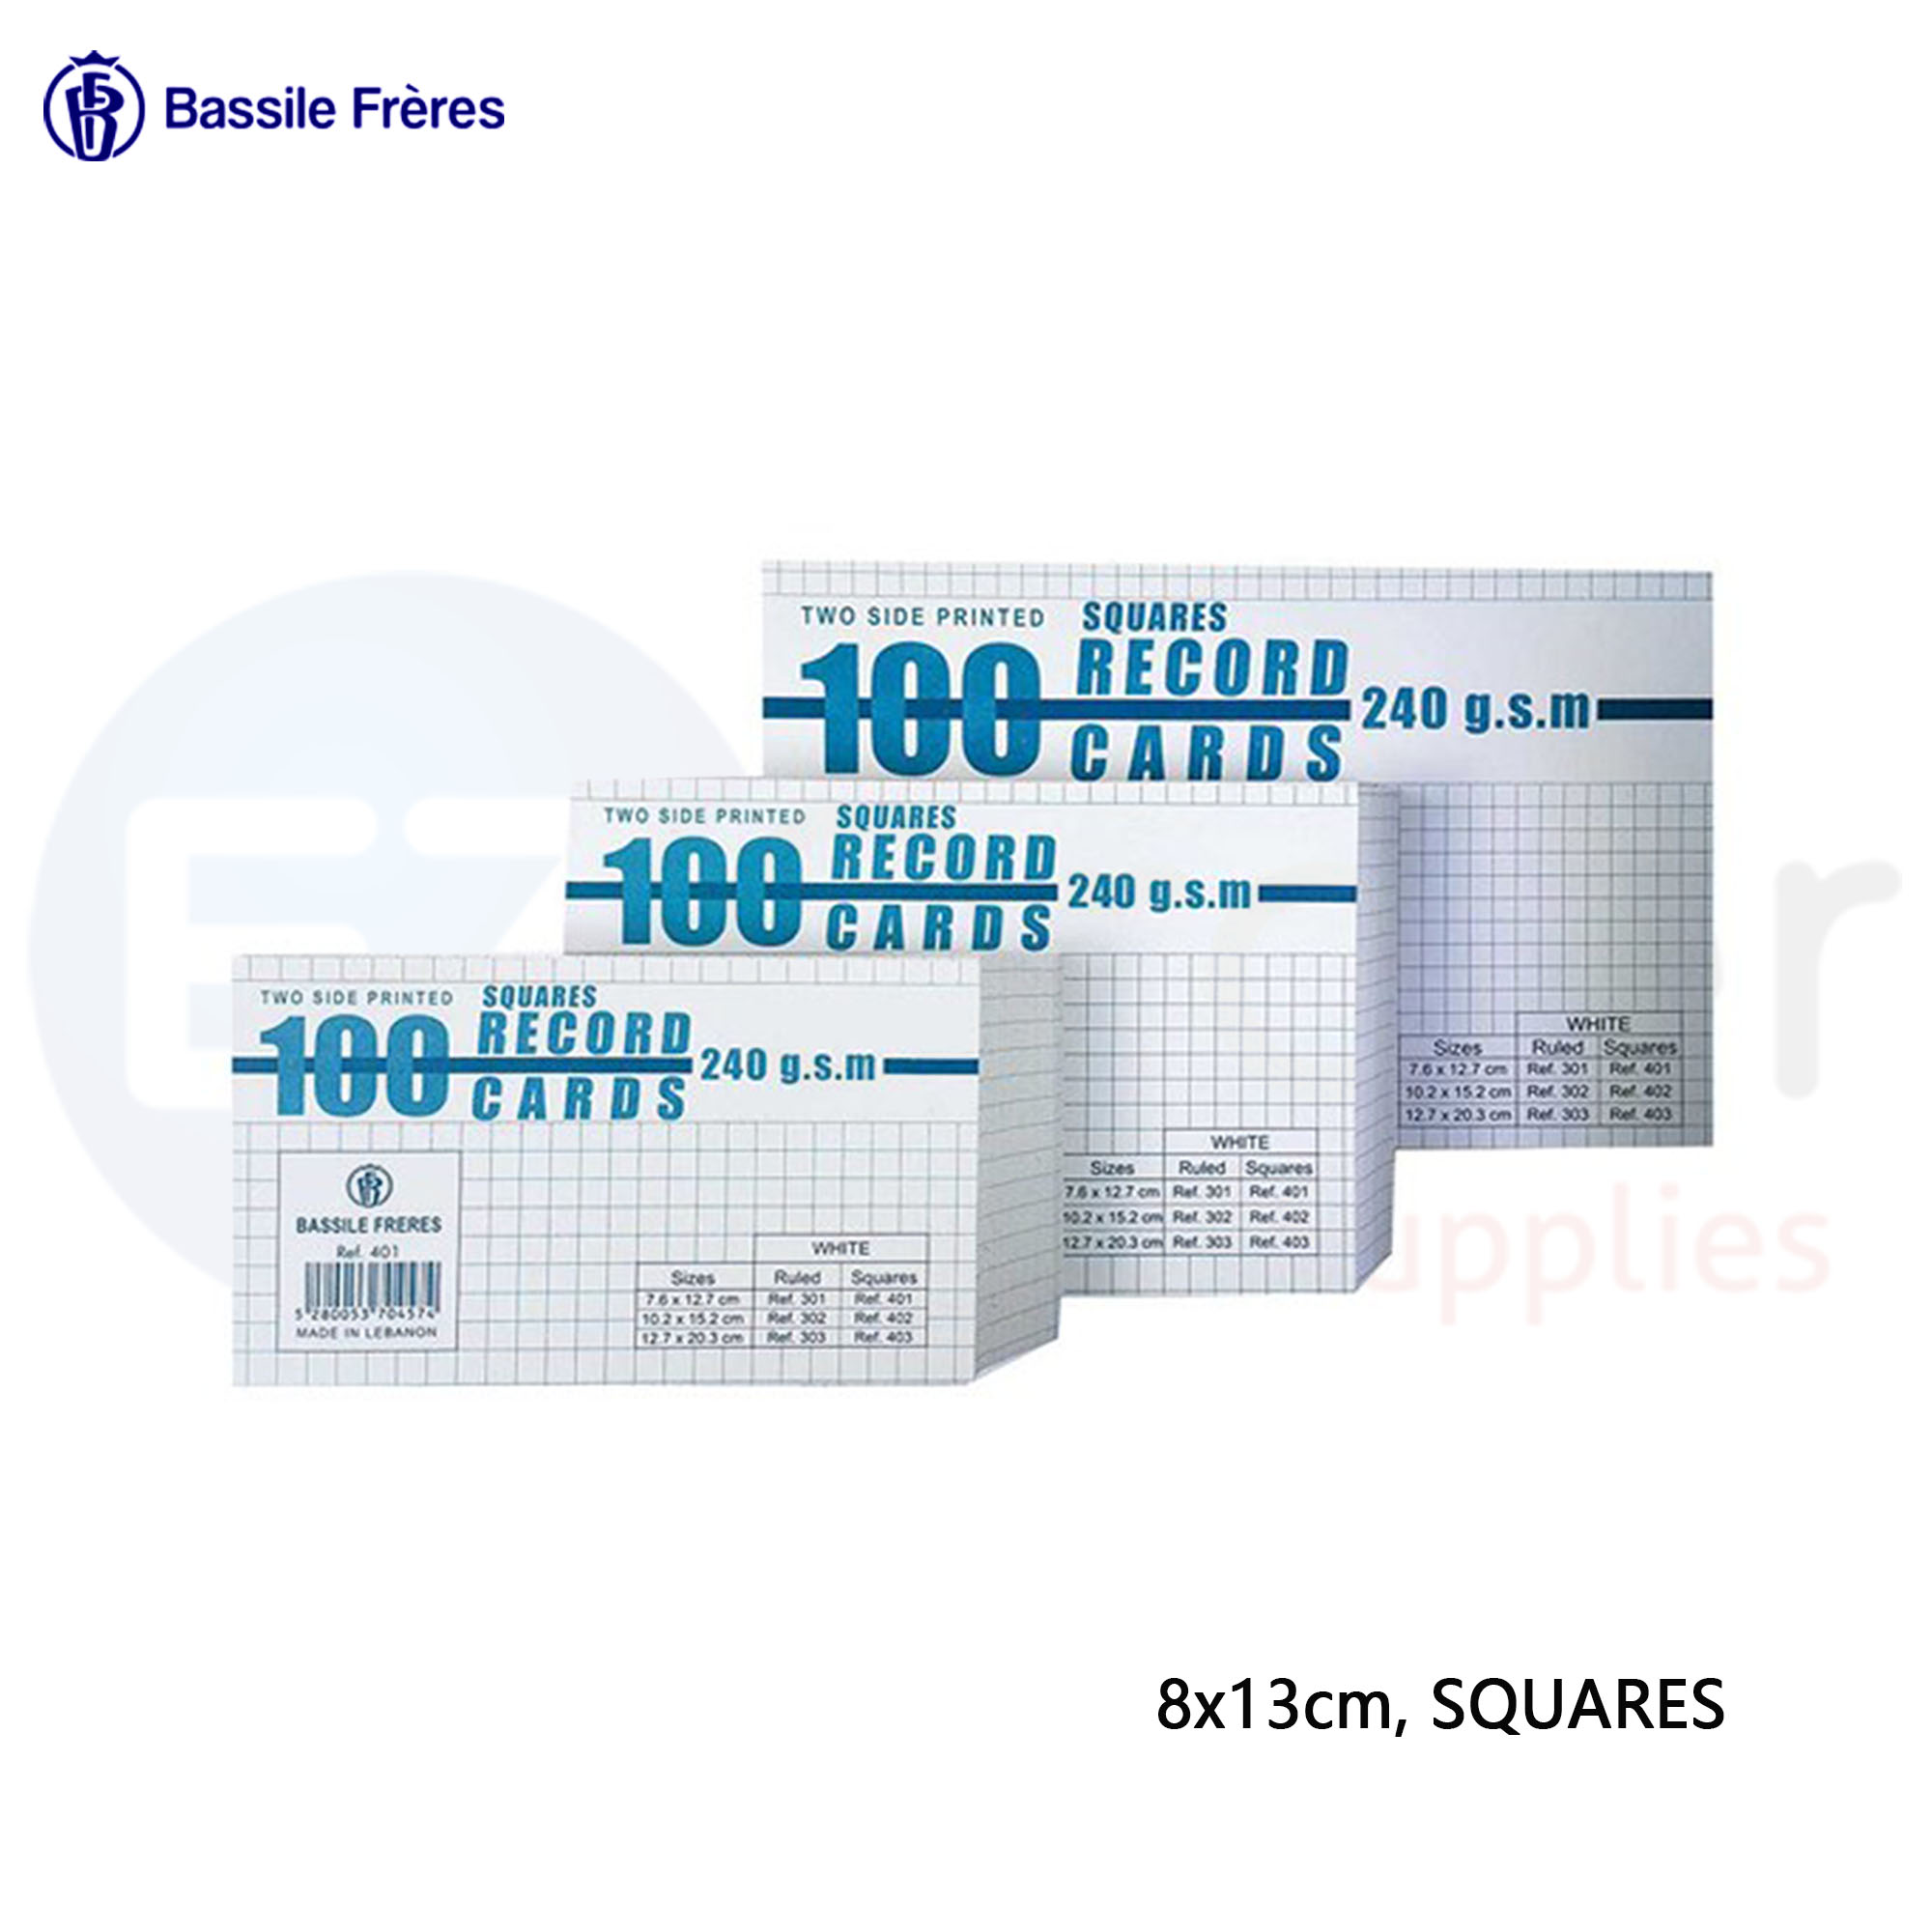 +Index card 8x13cm squares